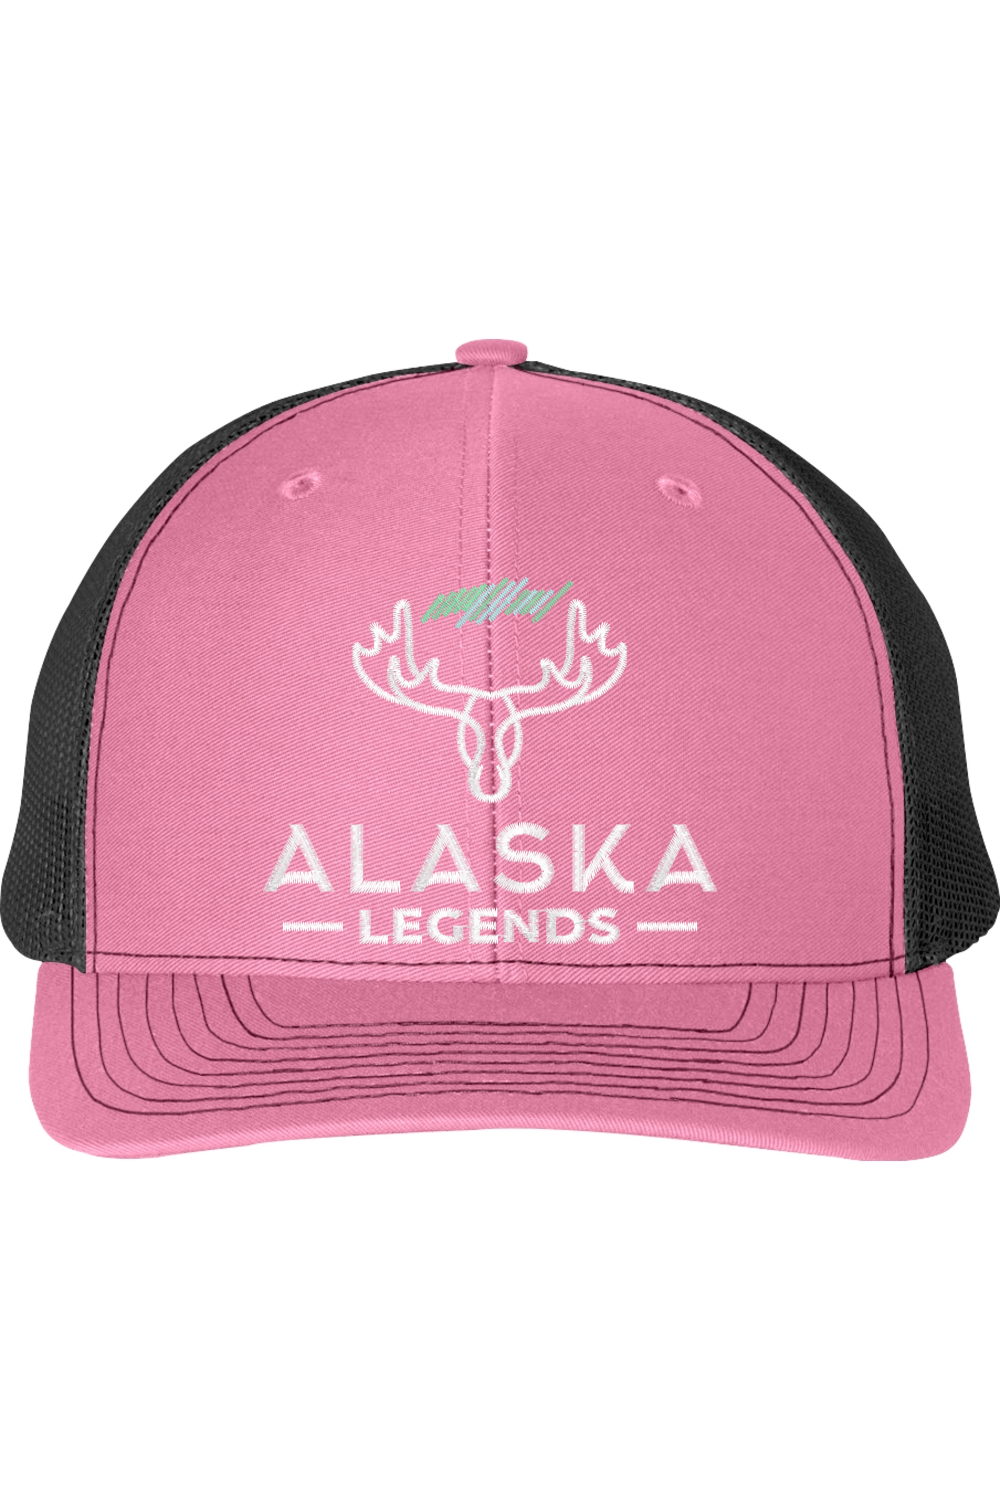 Alaska Legends Snapback Trucker